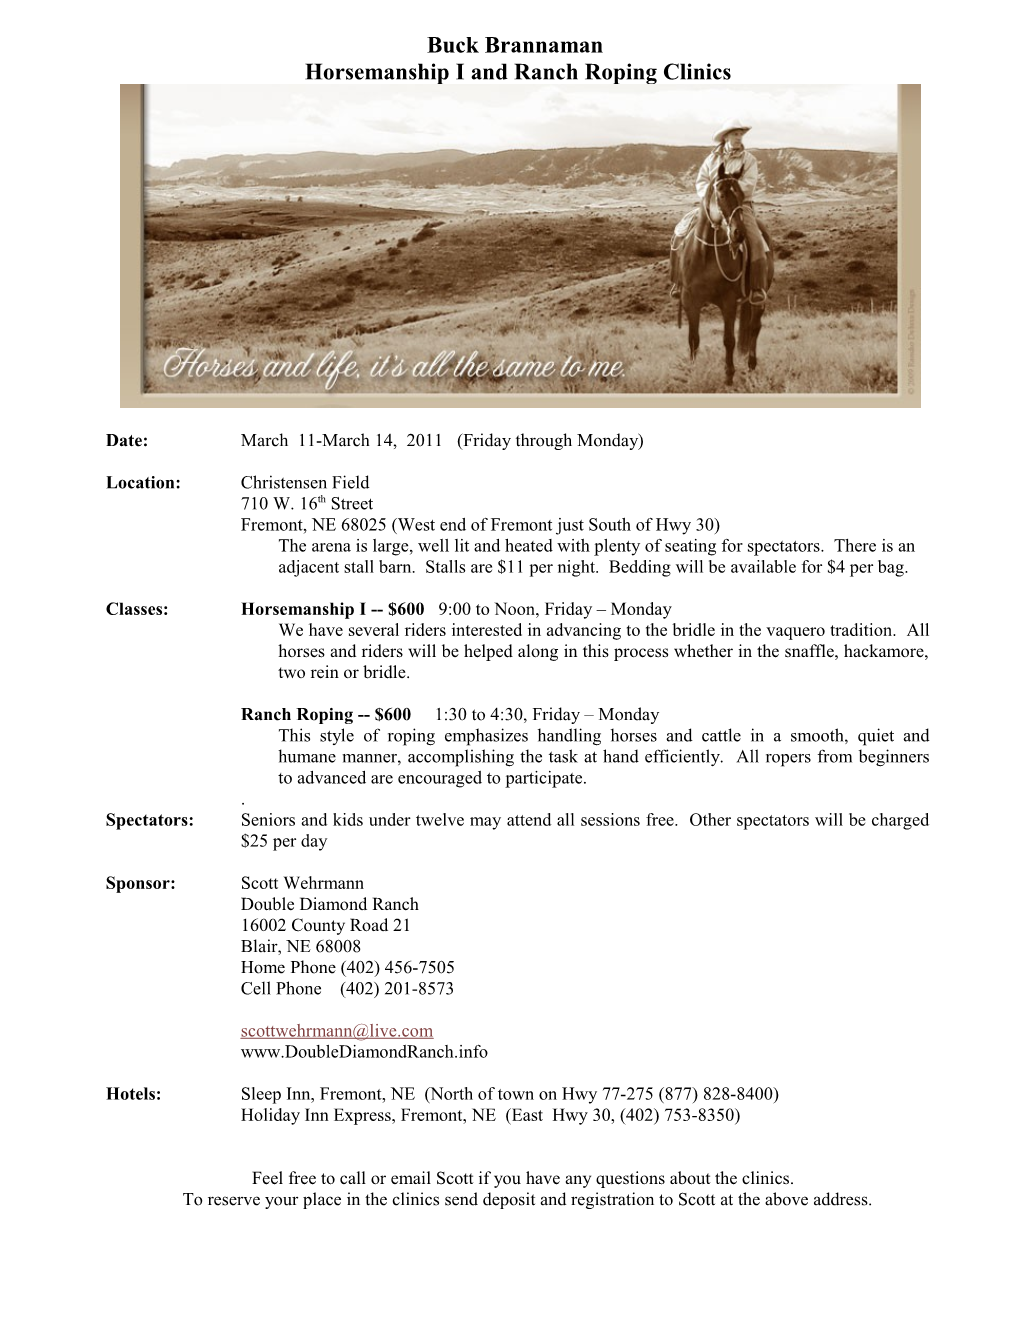 Horsemanship I and Ranch Roping Clinics